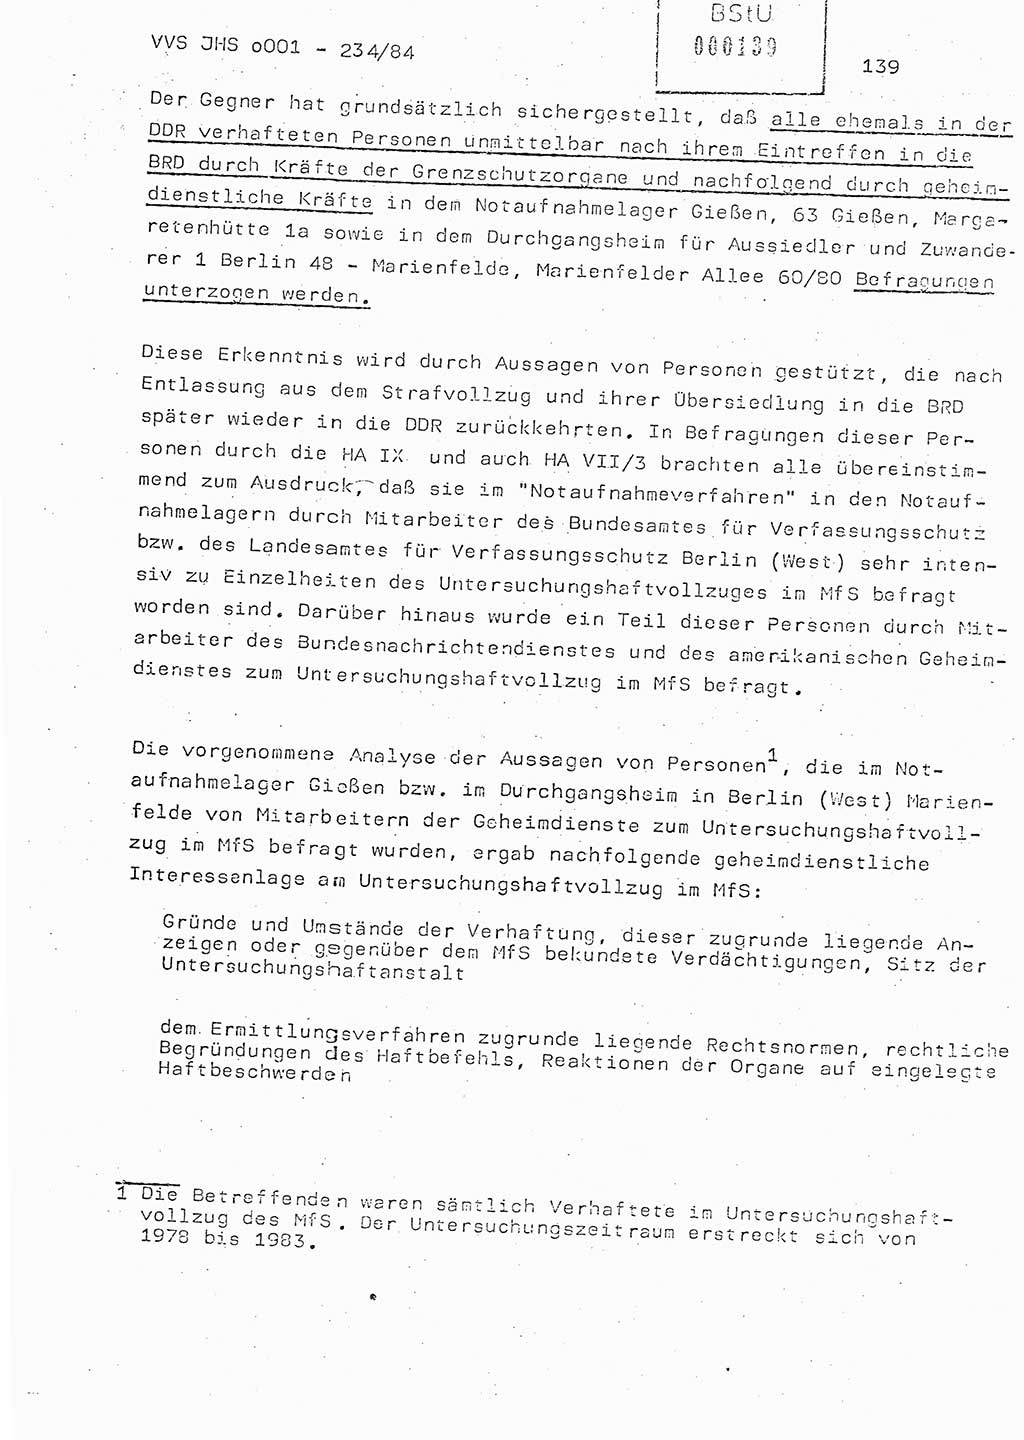 Dissertation Oberst Siegfried Rataizick (Abt. ⅩⅣ), Oberstleutnant Volkmar Heinz (Abt. ⅩⅣ), Oberstleutnant Werner Stein (HA Ⅸ), Hauptmann Heinz Conrad (JHS), Ministerium für Staatssicherheit (MfS) [Deutsche Demokratische Republik (DDR)], Juristische Hochschule (JHS), Vertrauliche Verschlußsache (VVS) o001-234/84, Potsdam 1984, Seite 139 (Diss. MfS DDR JHS VVS o001-234/84 1984, S. 139)